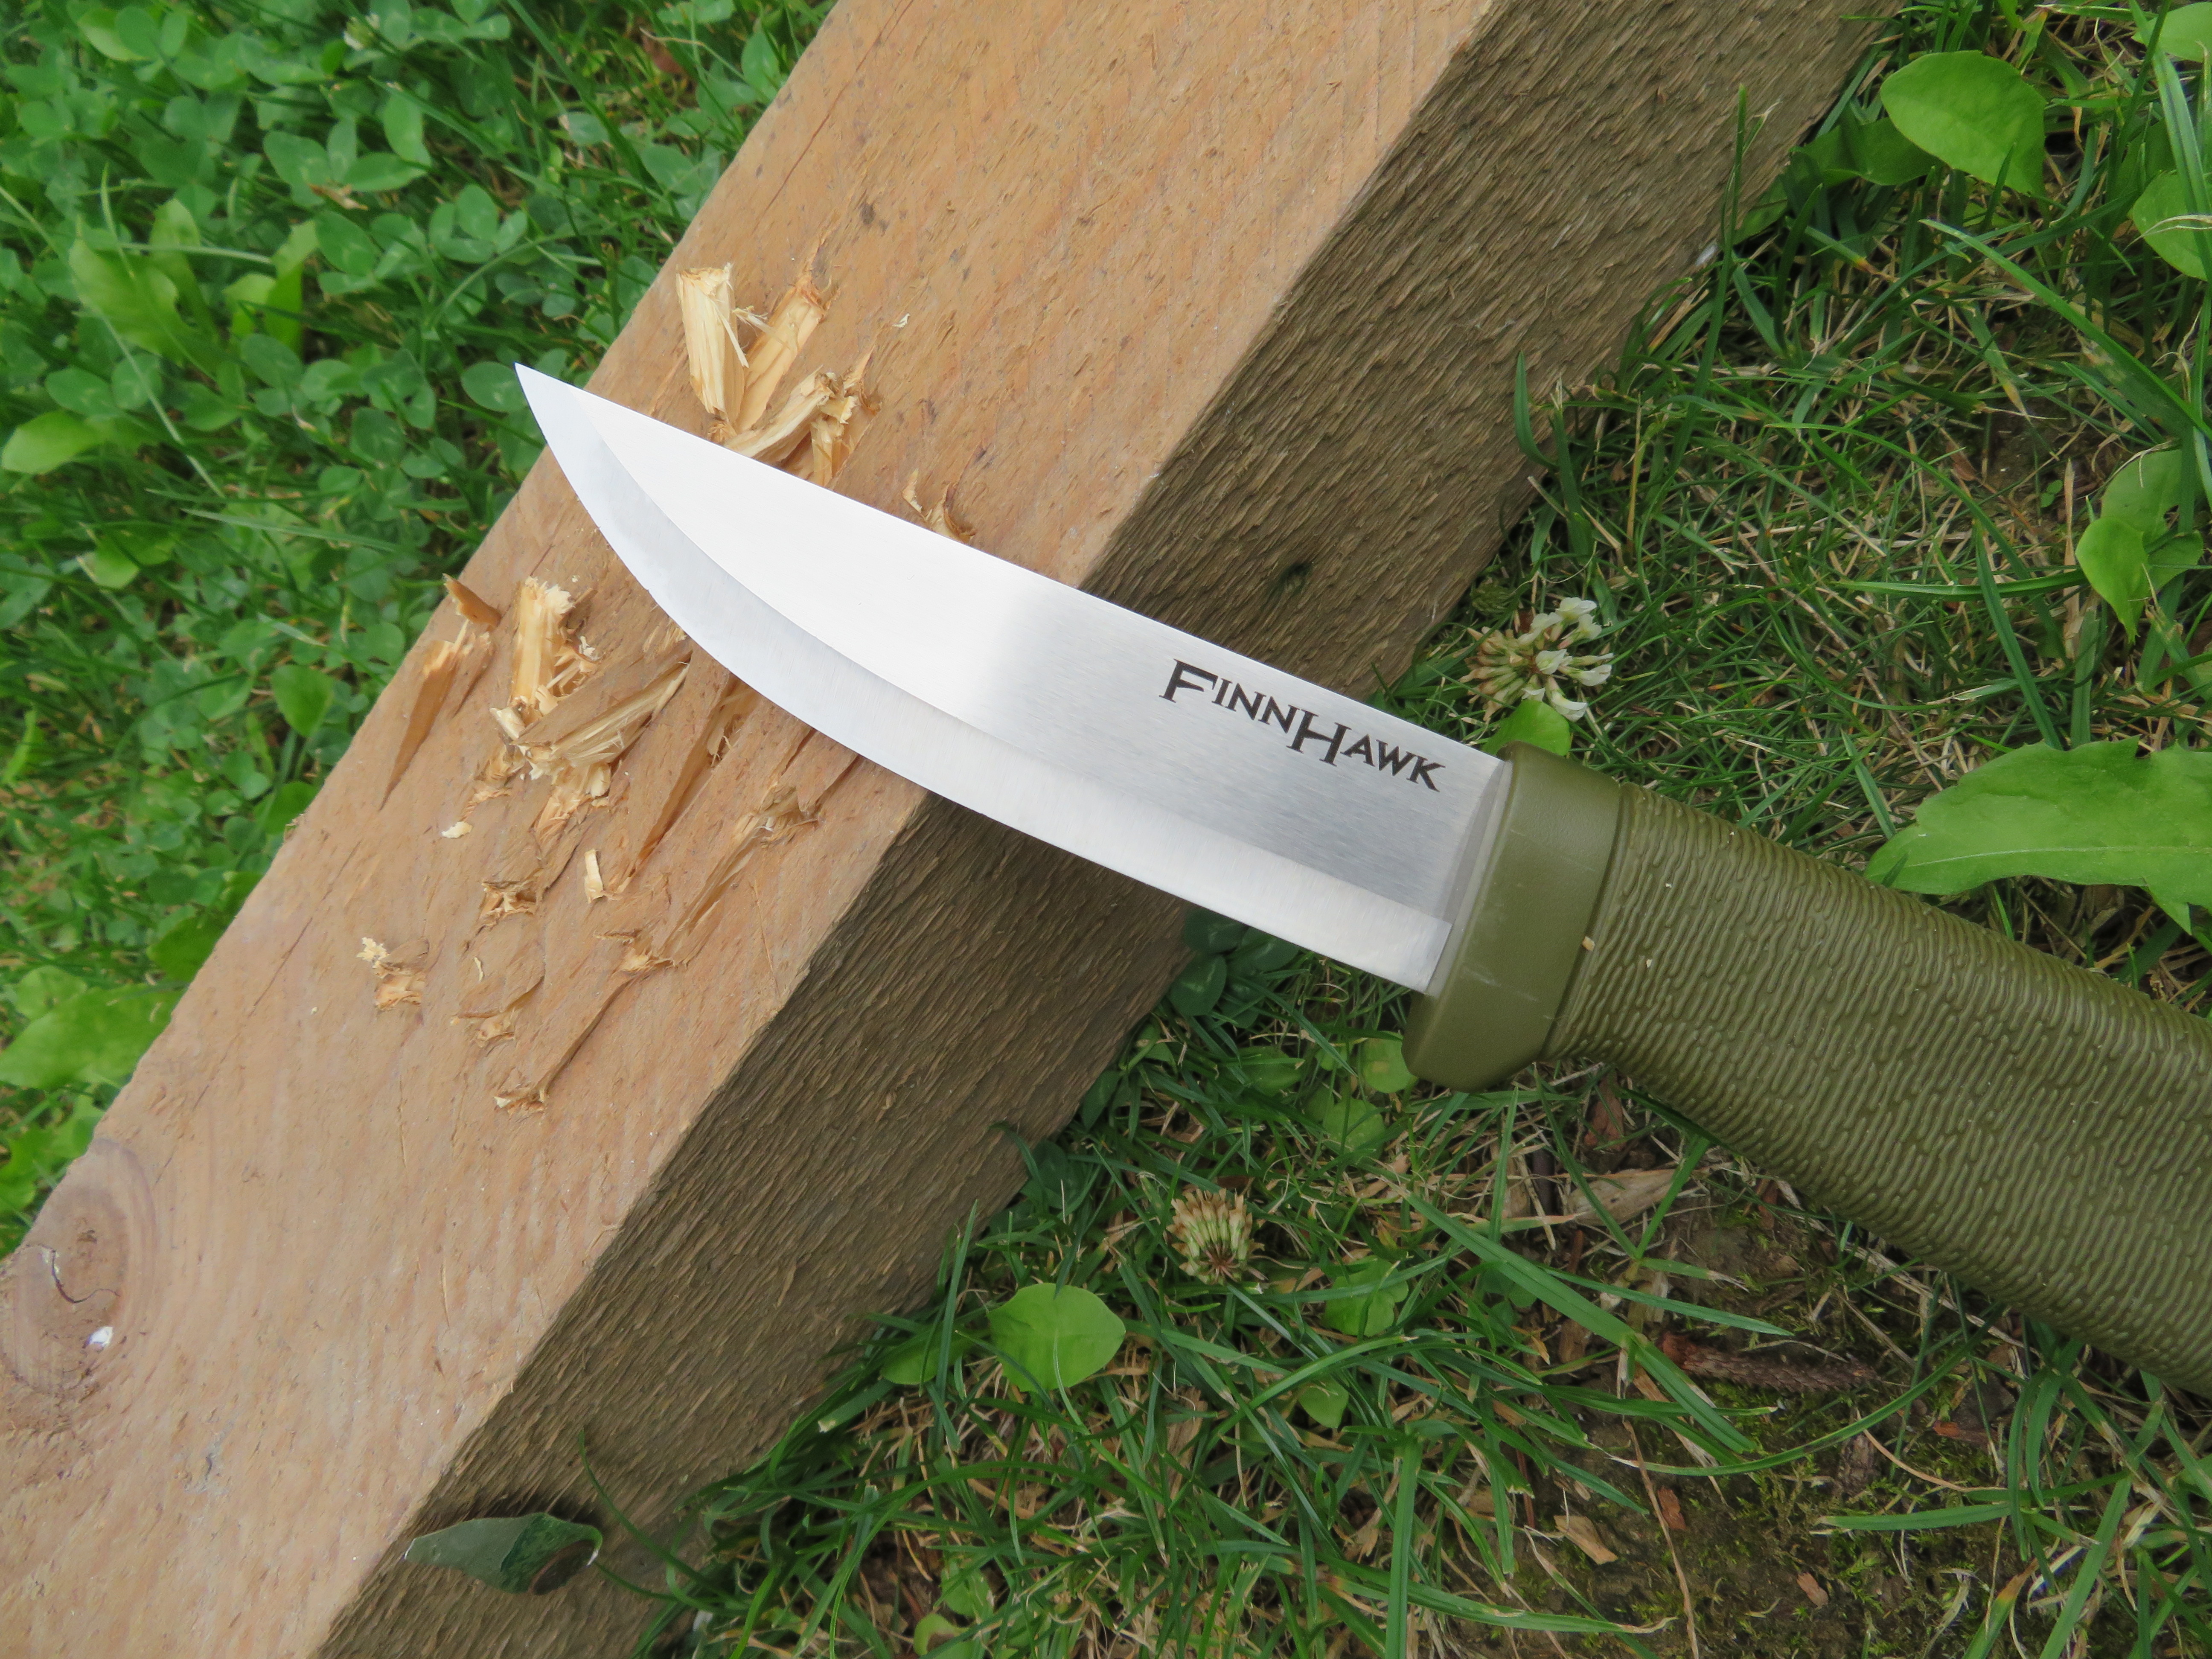 Test hrotu nože Finn Hawk do dřevěného trámku.